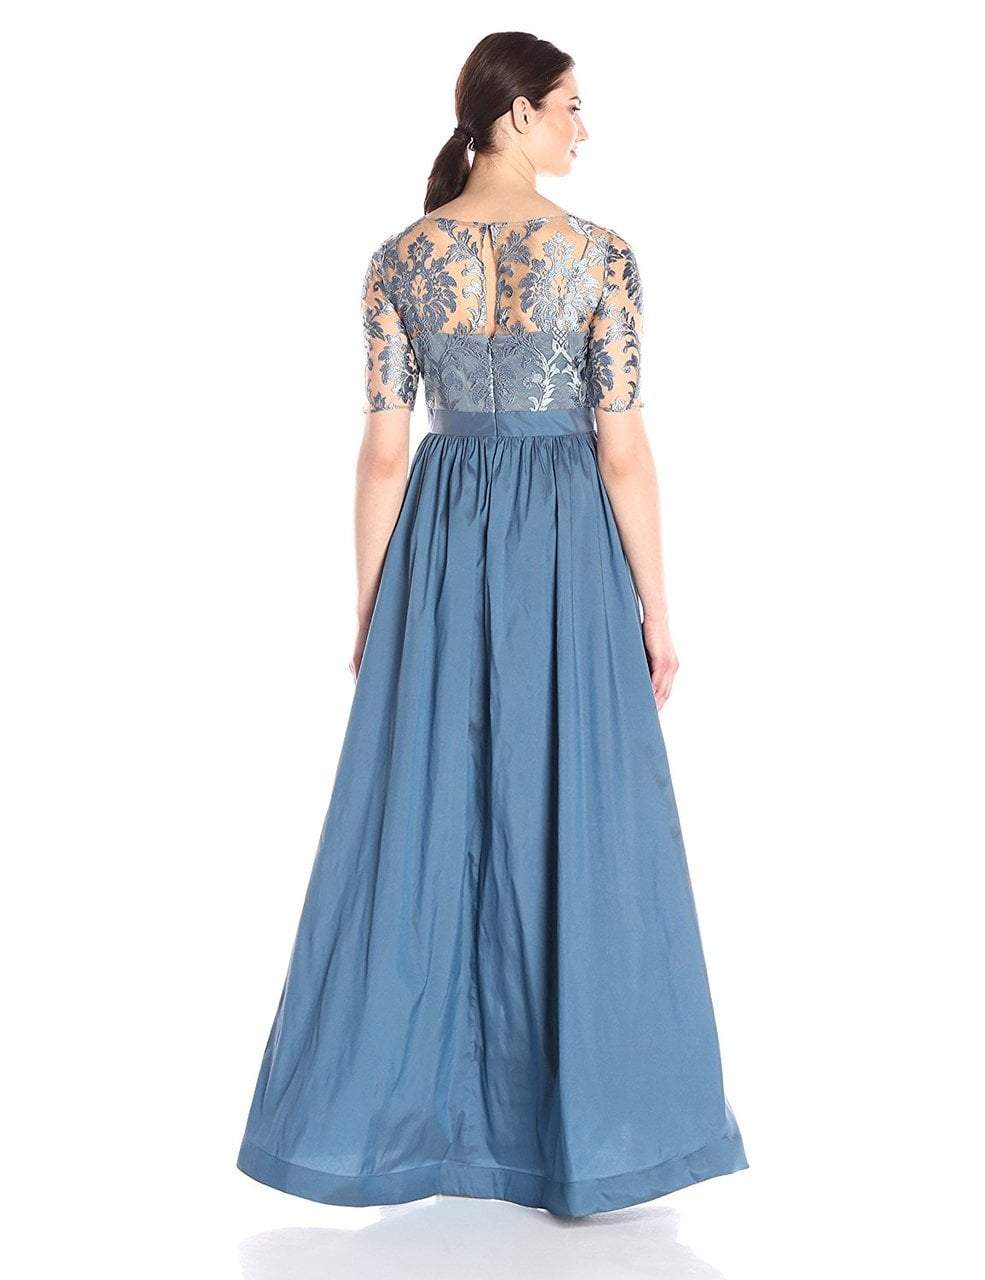 Adrianna Papell - 81920870 Lace Illusion Bateau Taffeta A-line Dress in Blue